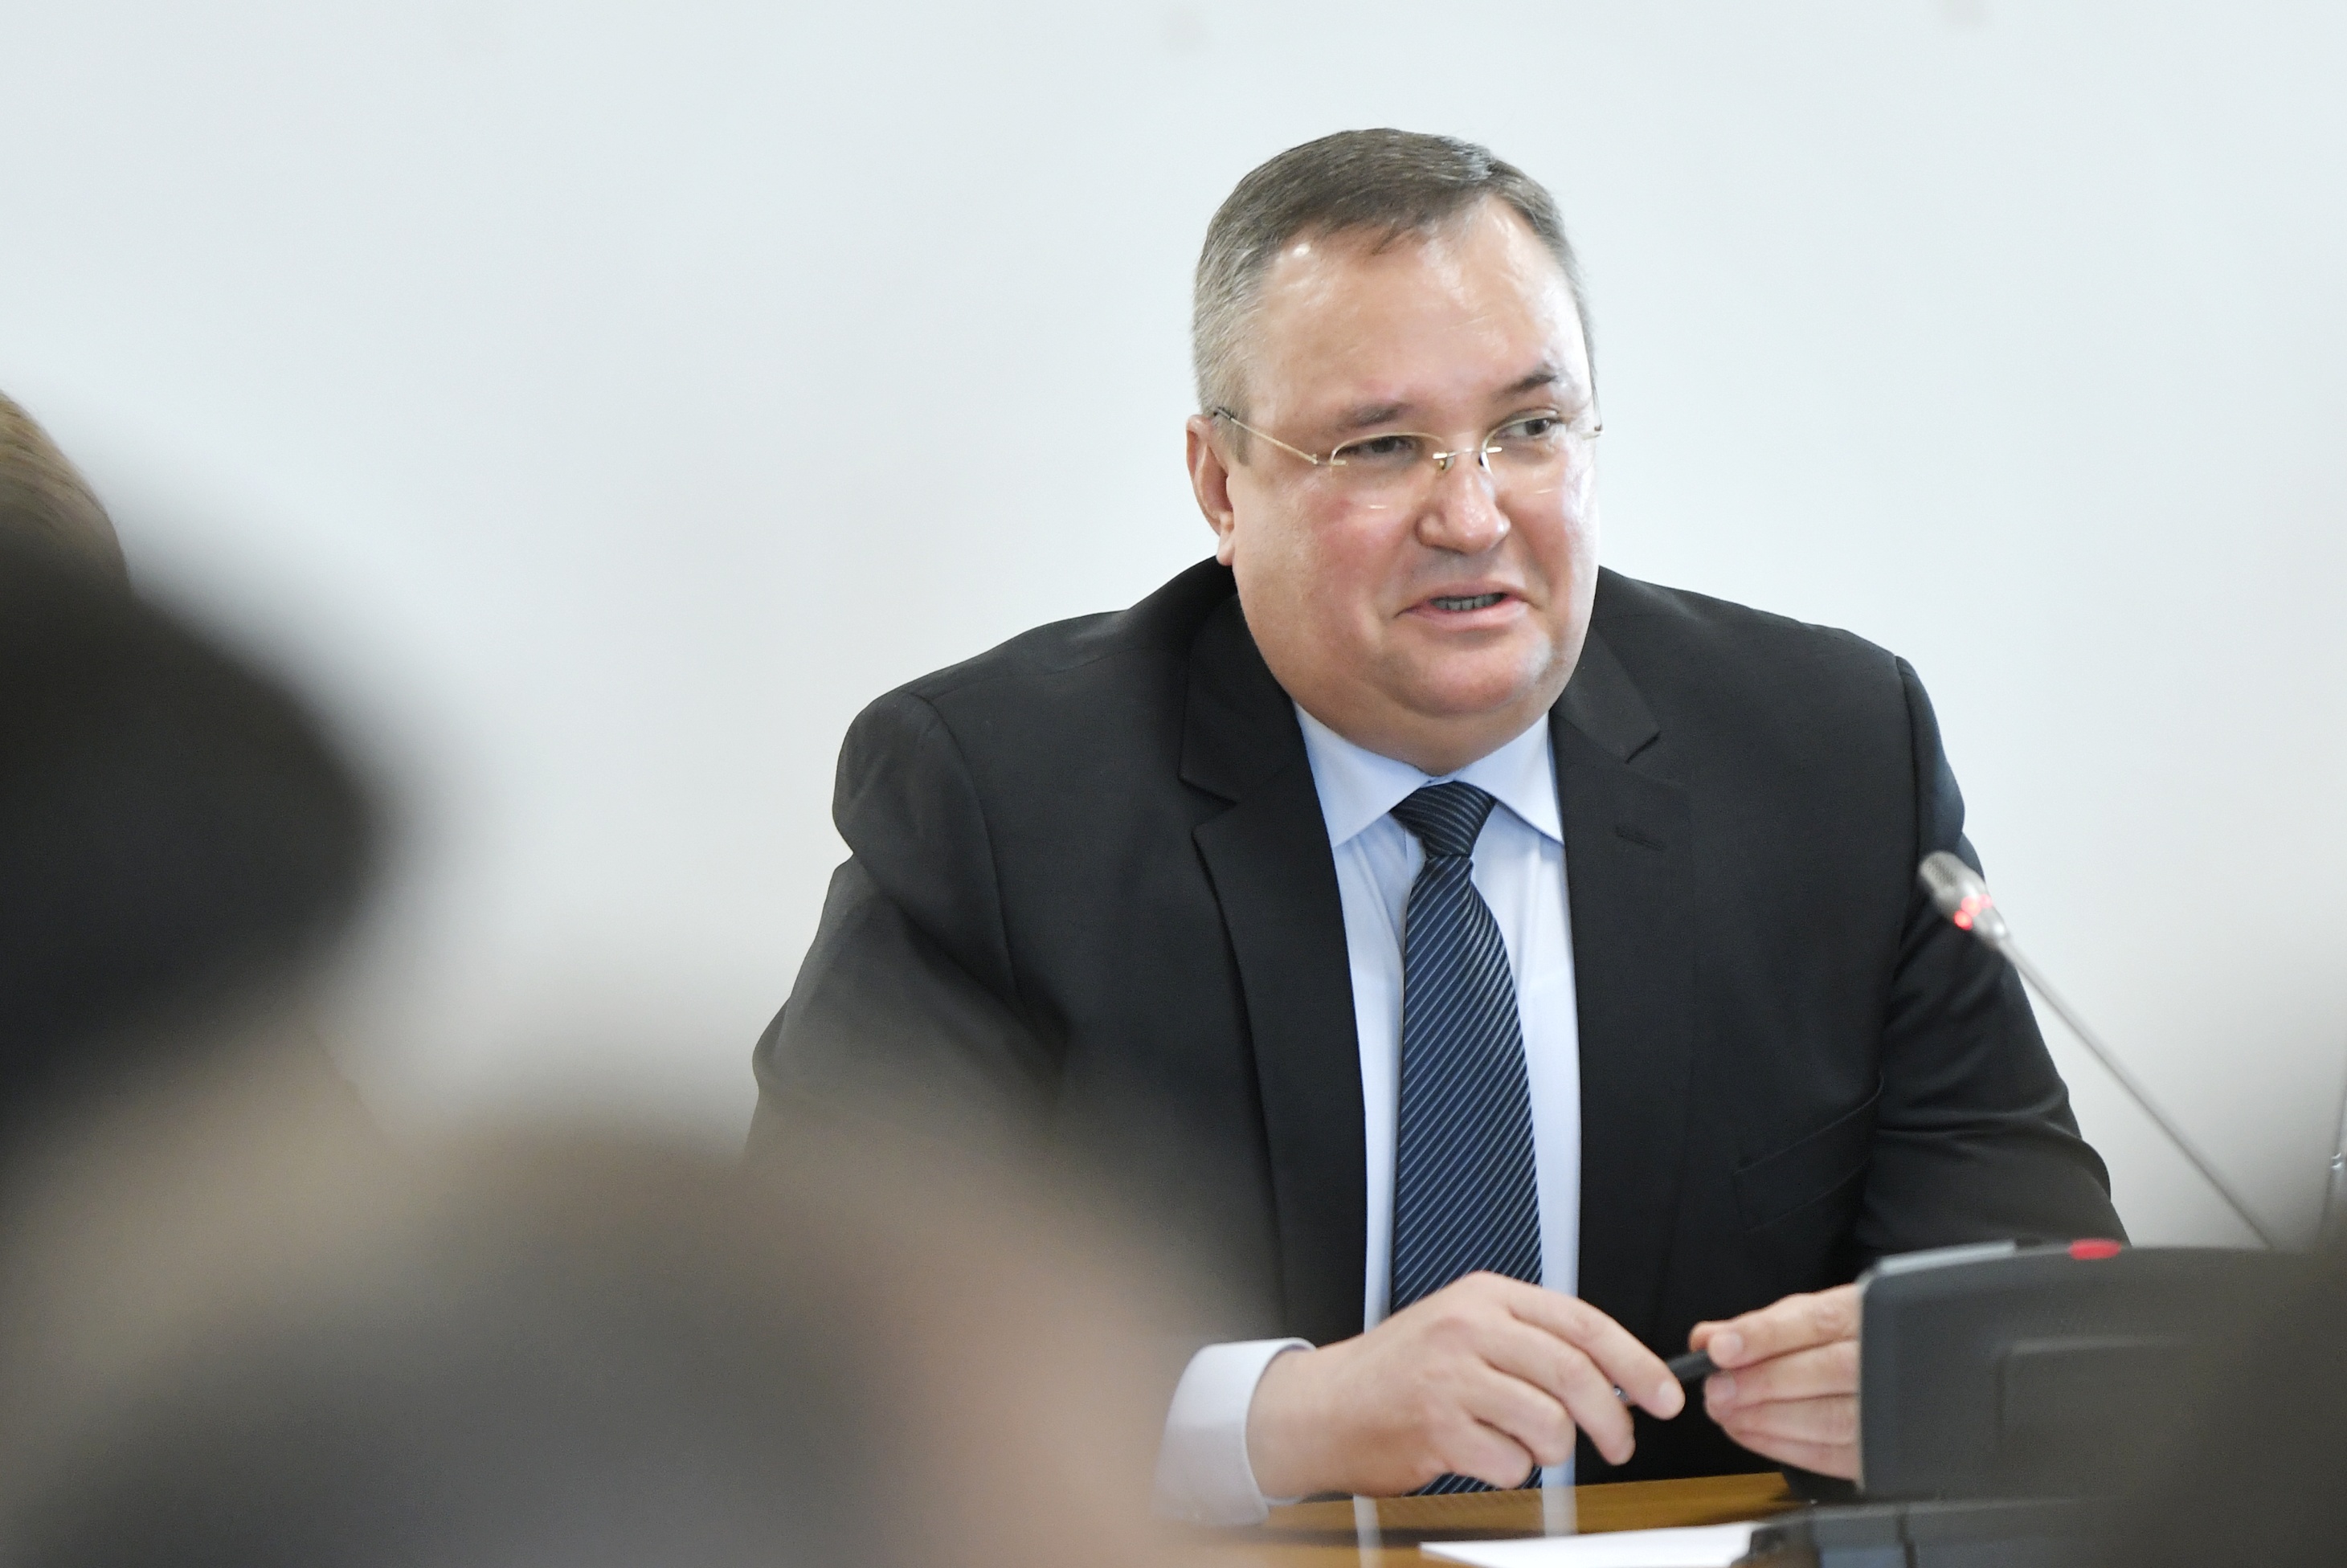 Premierul Ciucă despre proiectul bugetar pentru 2022: Vom adopta un buget echilibrat, responsabil şi realist